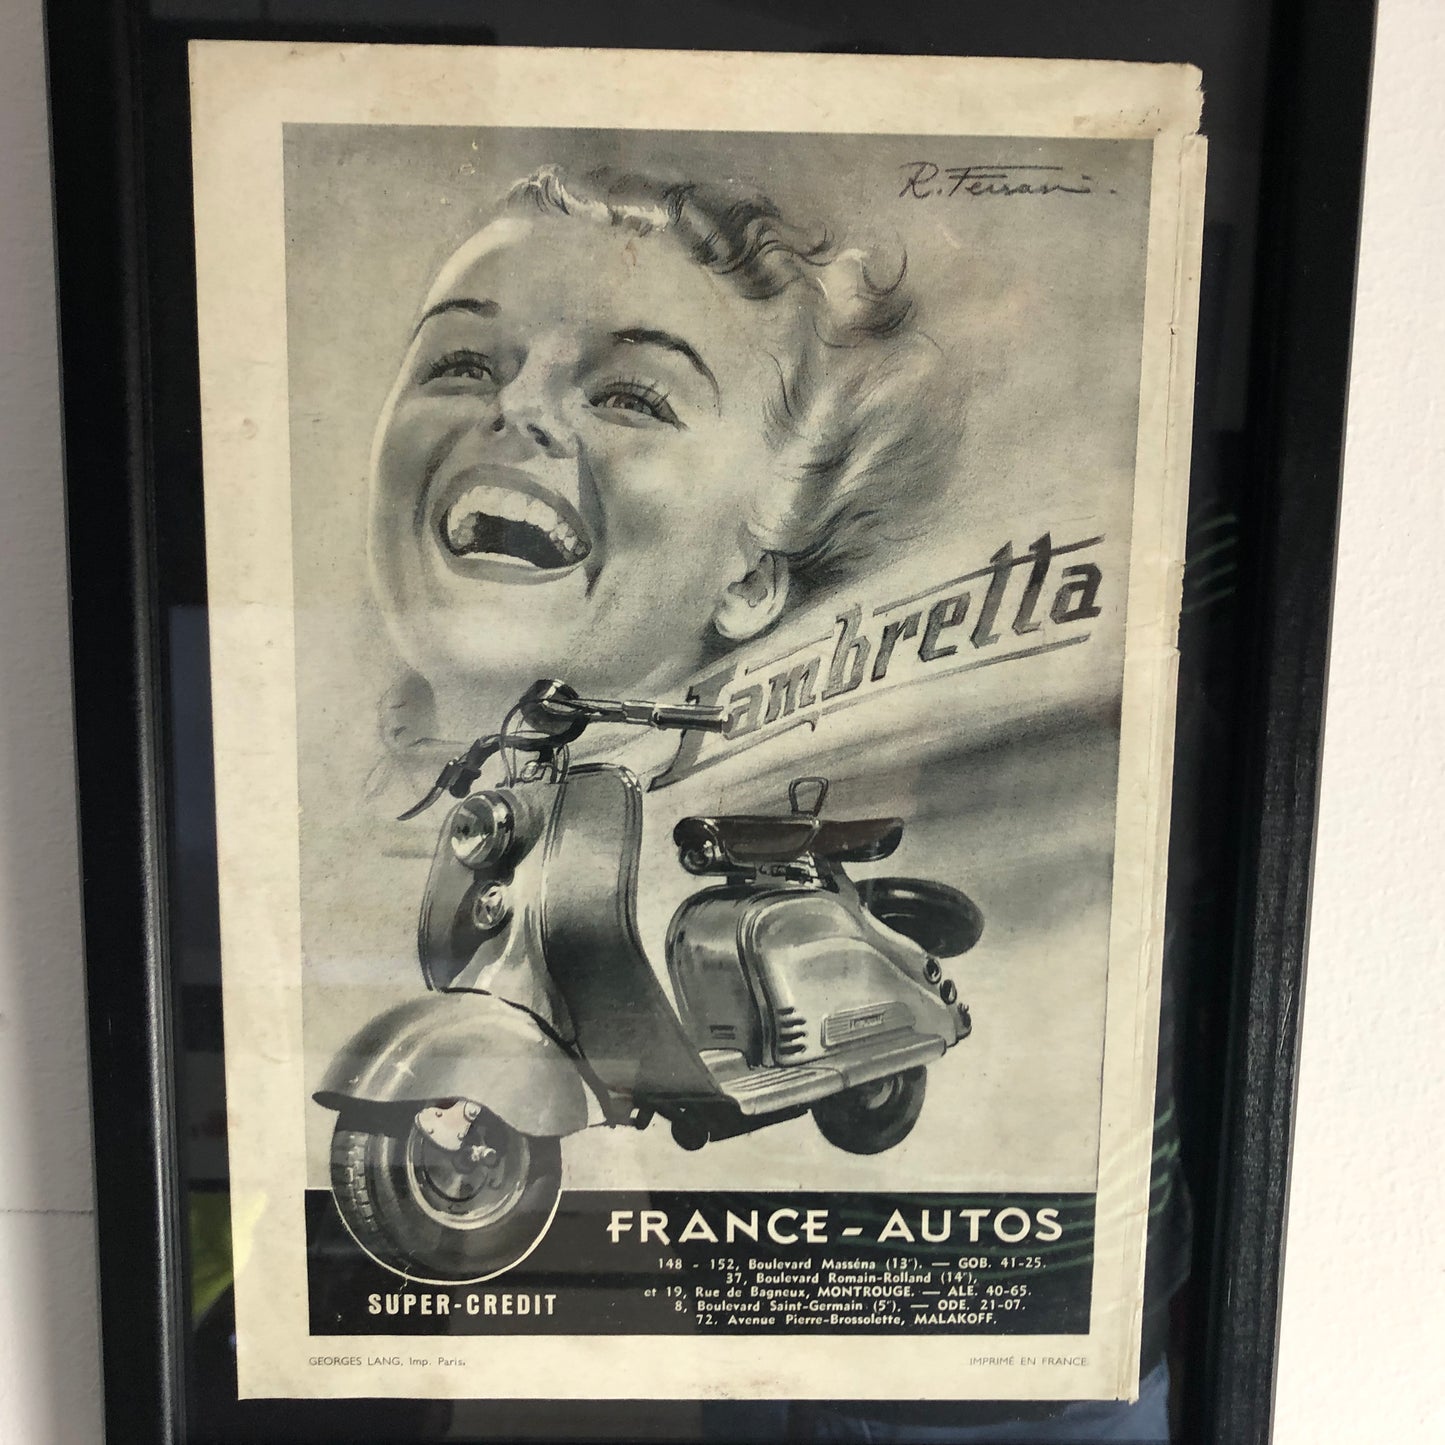 Lambretta, 1954 Magazine Print of the Advertisement created by Rino Ferrari for Lambretta